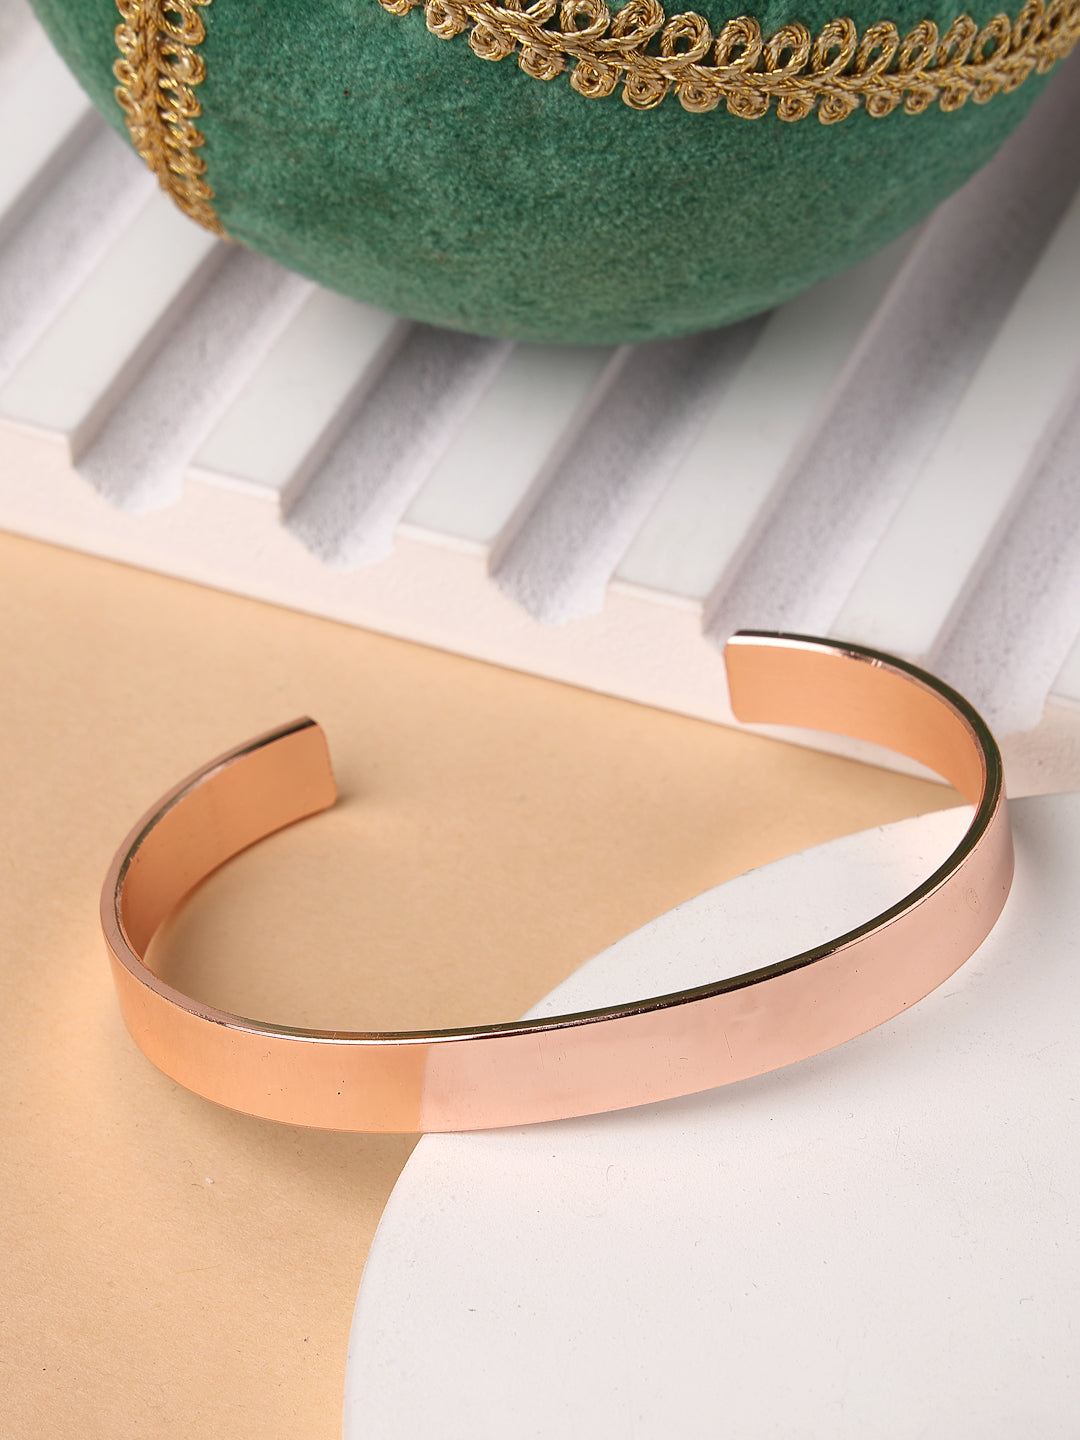 Men's Rose Gold Stainless Steel Cuff Bracelet - NVR